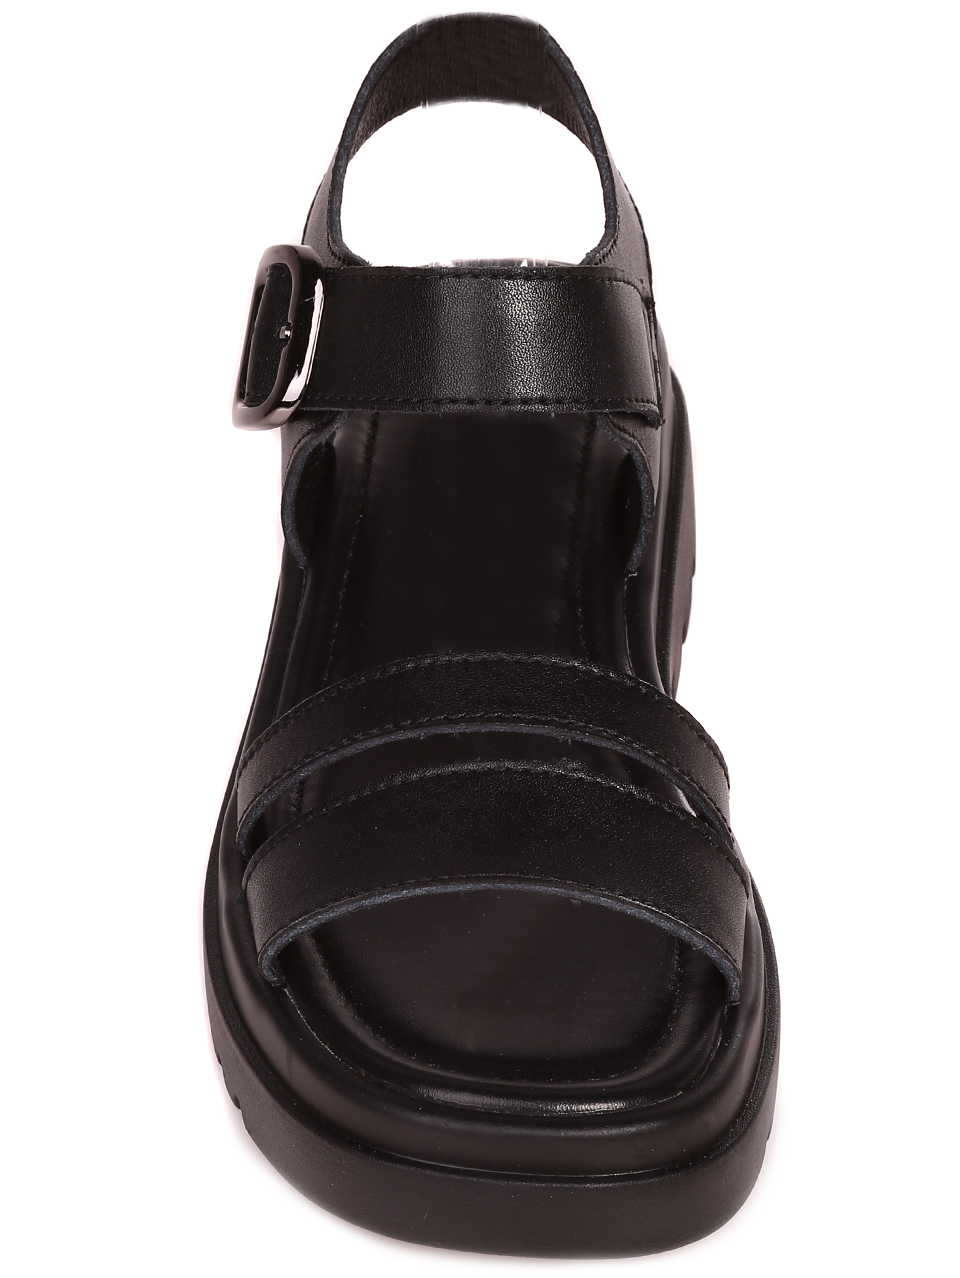 Ежедневни дамски сандали на платформа от естествена кожа 4AF-23143 black